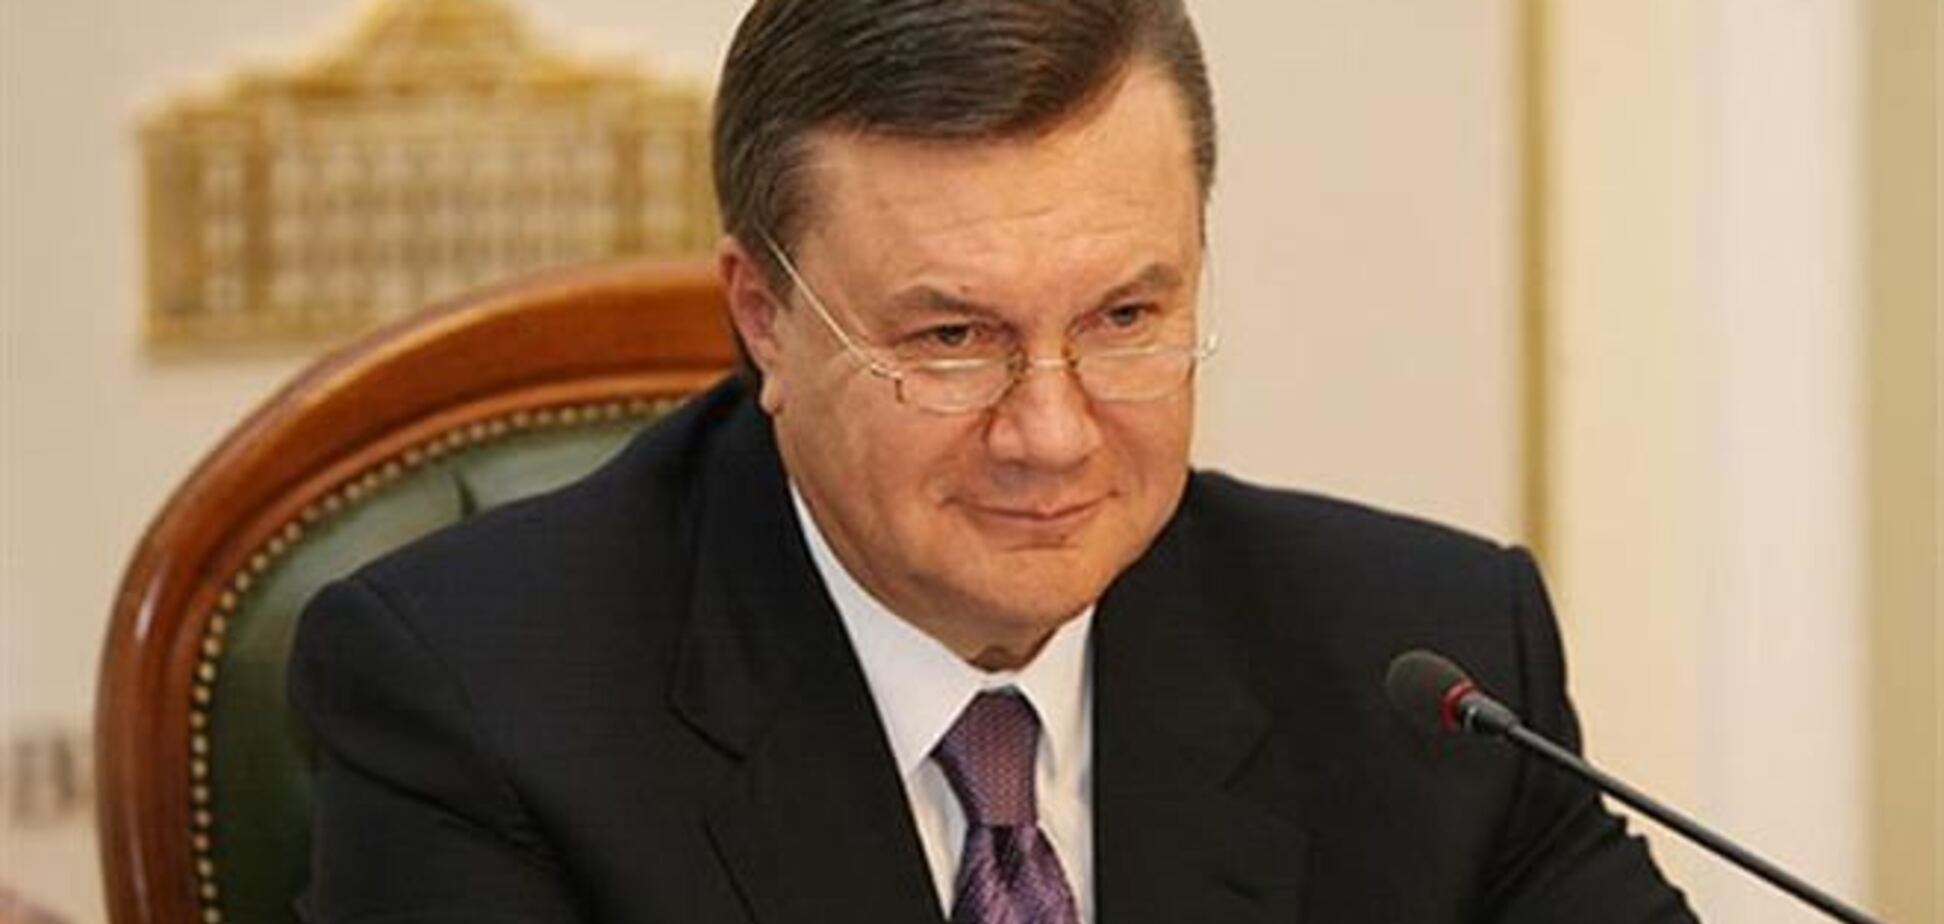 Рішення про виключення Януковича з ПР можуть прийняти на з'їзді партії - Шуфрич